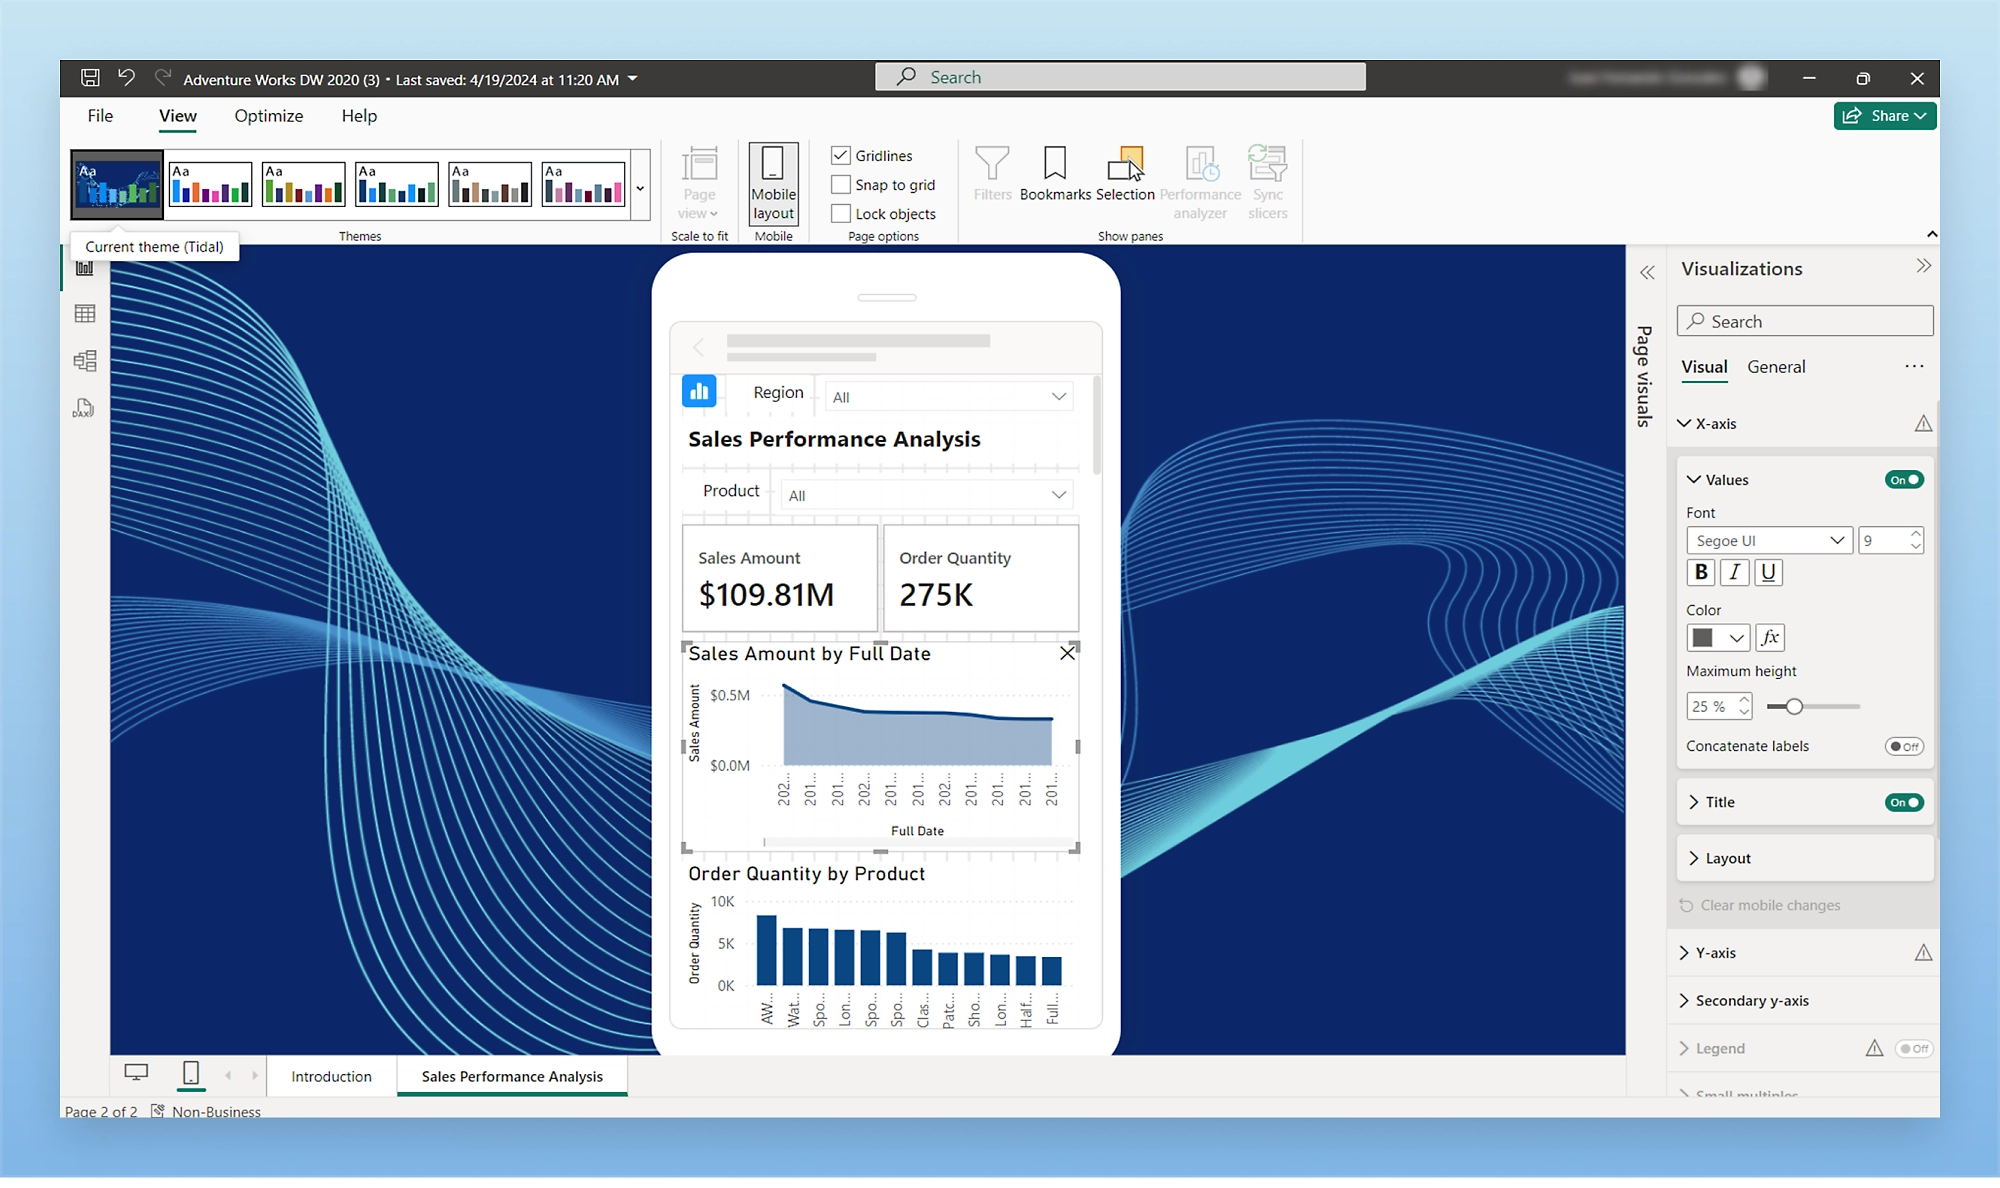 Captura de pantalla del panel que muestra el análisis de rendimiento de ventas en tiempo real con gráficos relacionados